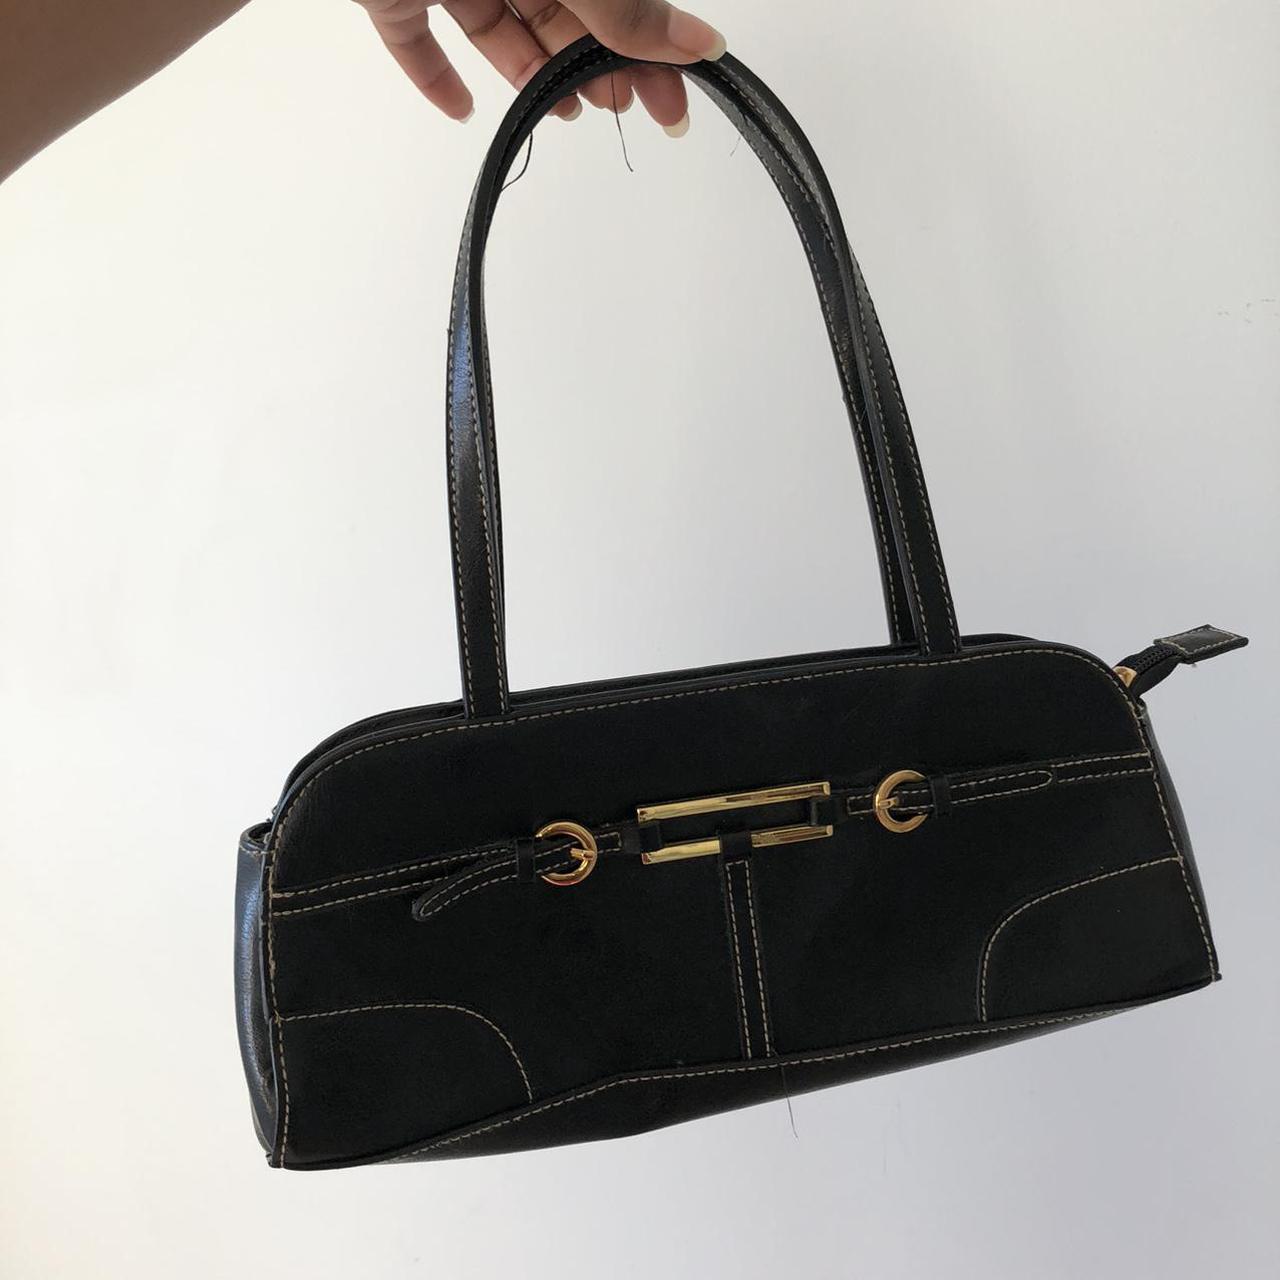 Product Image 2 - Gorgeous black shoulder bag.